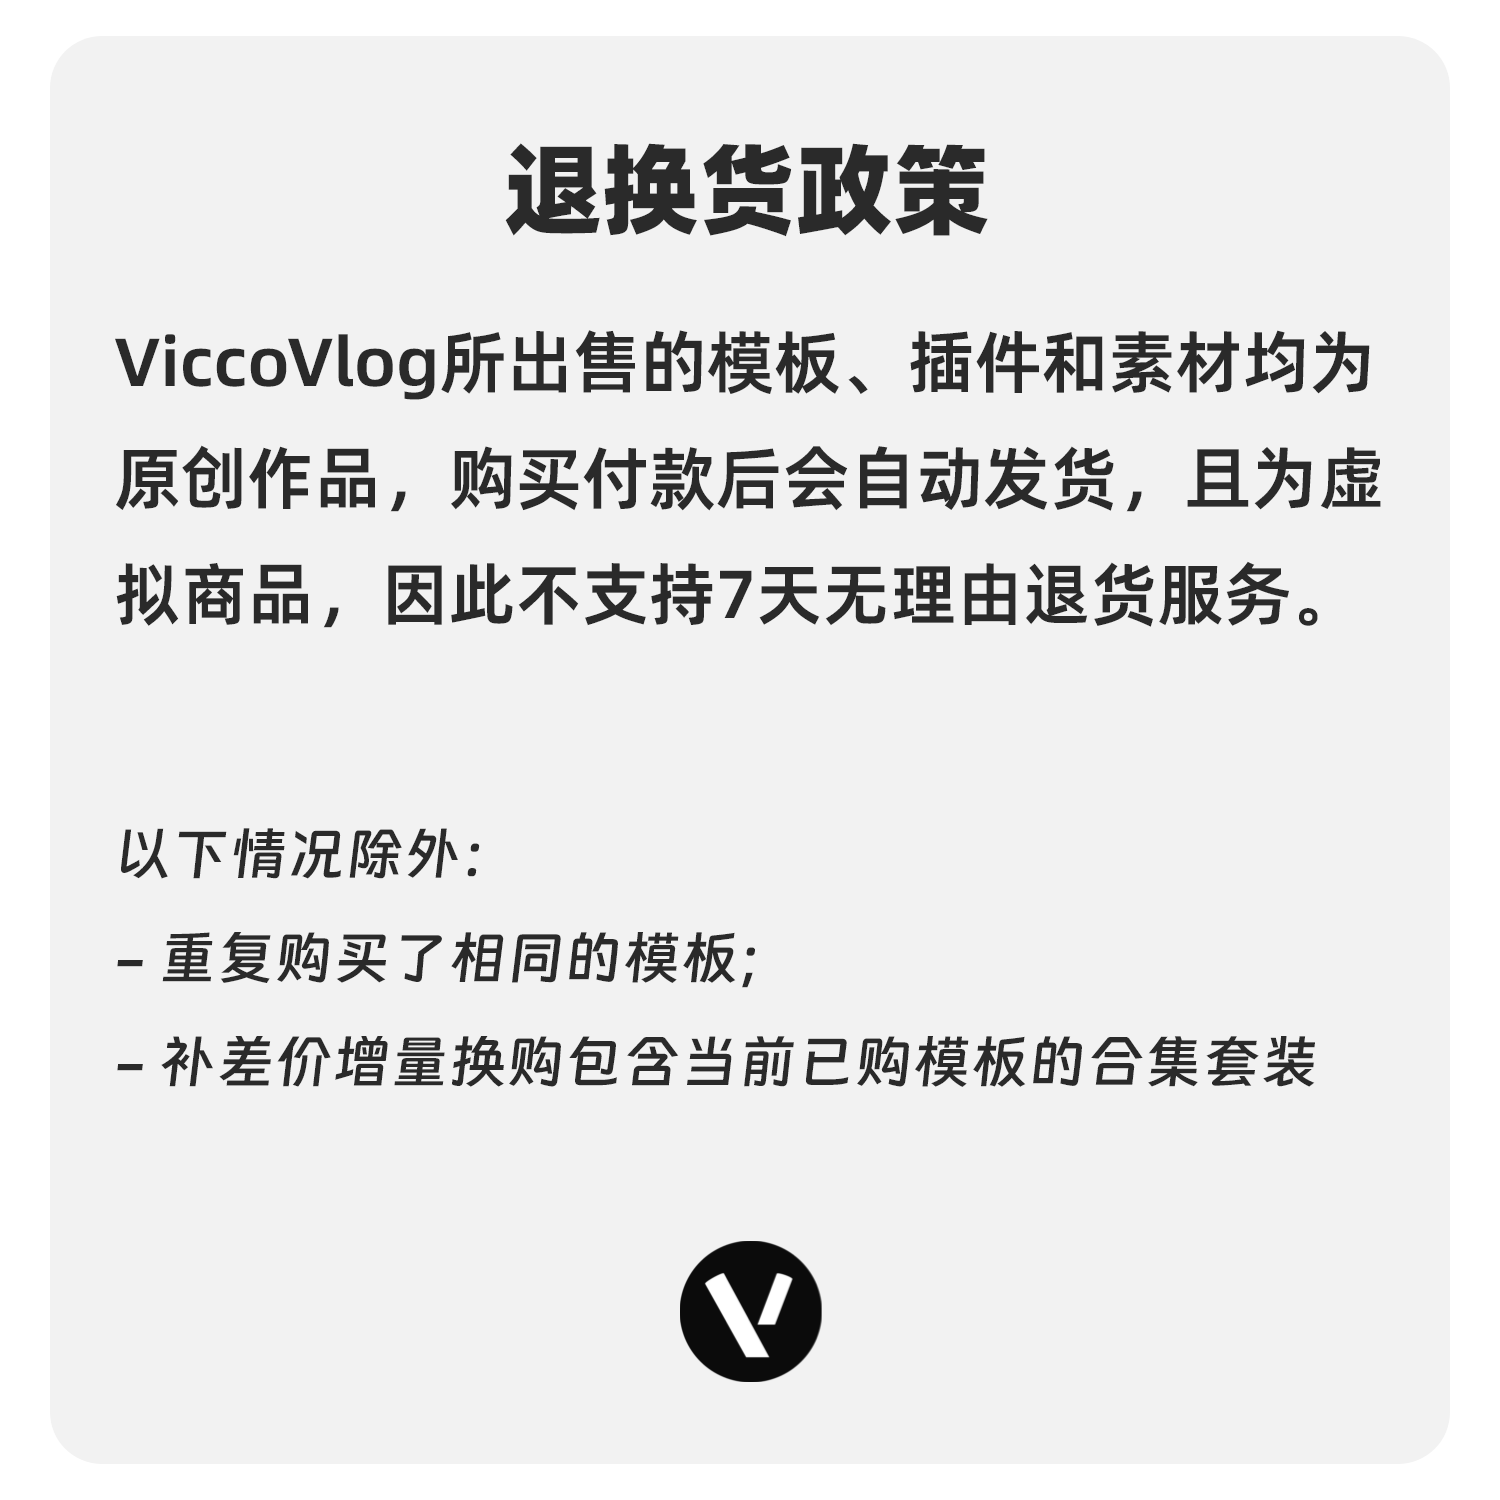 ViccoVlog 达芬奇 “萌新四件套” 模板套装 |分屏转场MG图像基础 - 图1